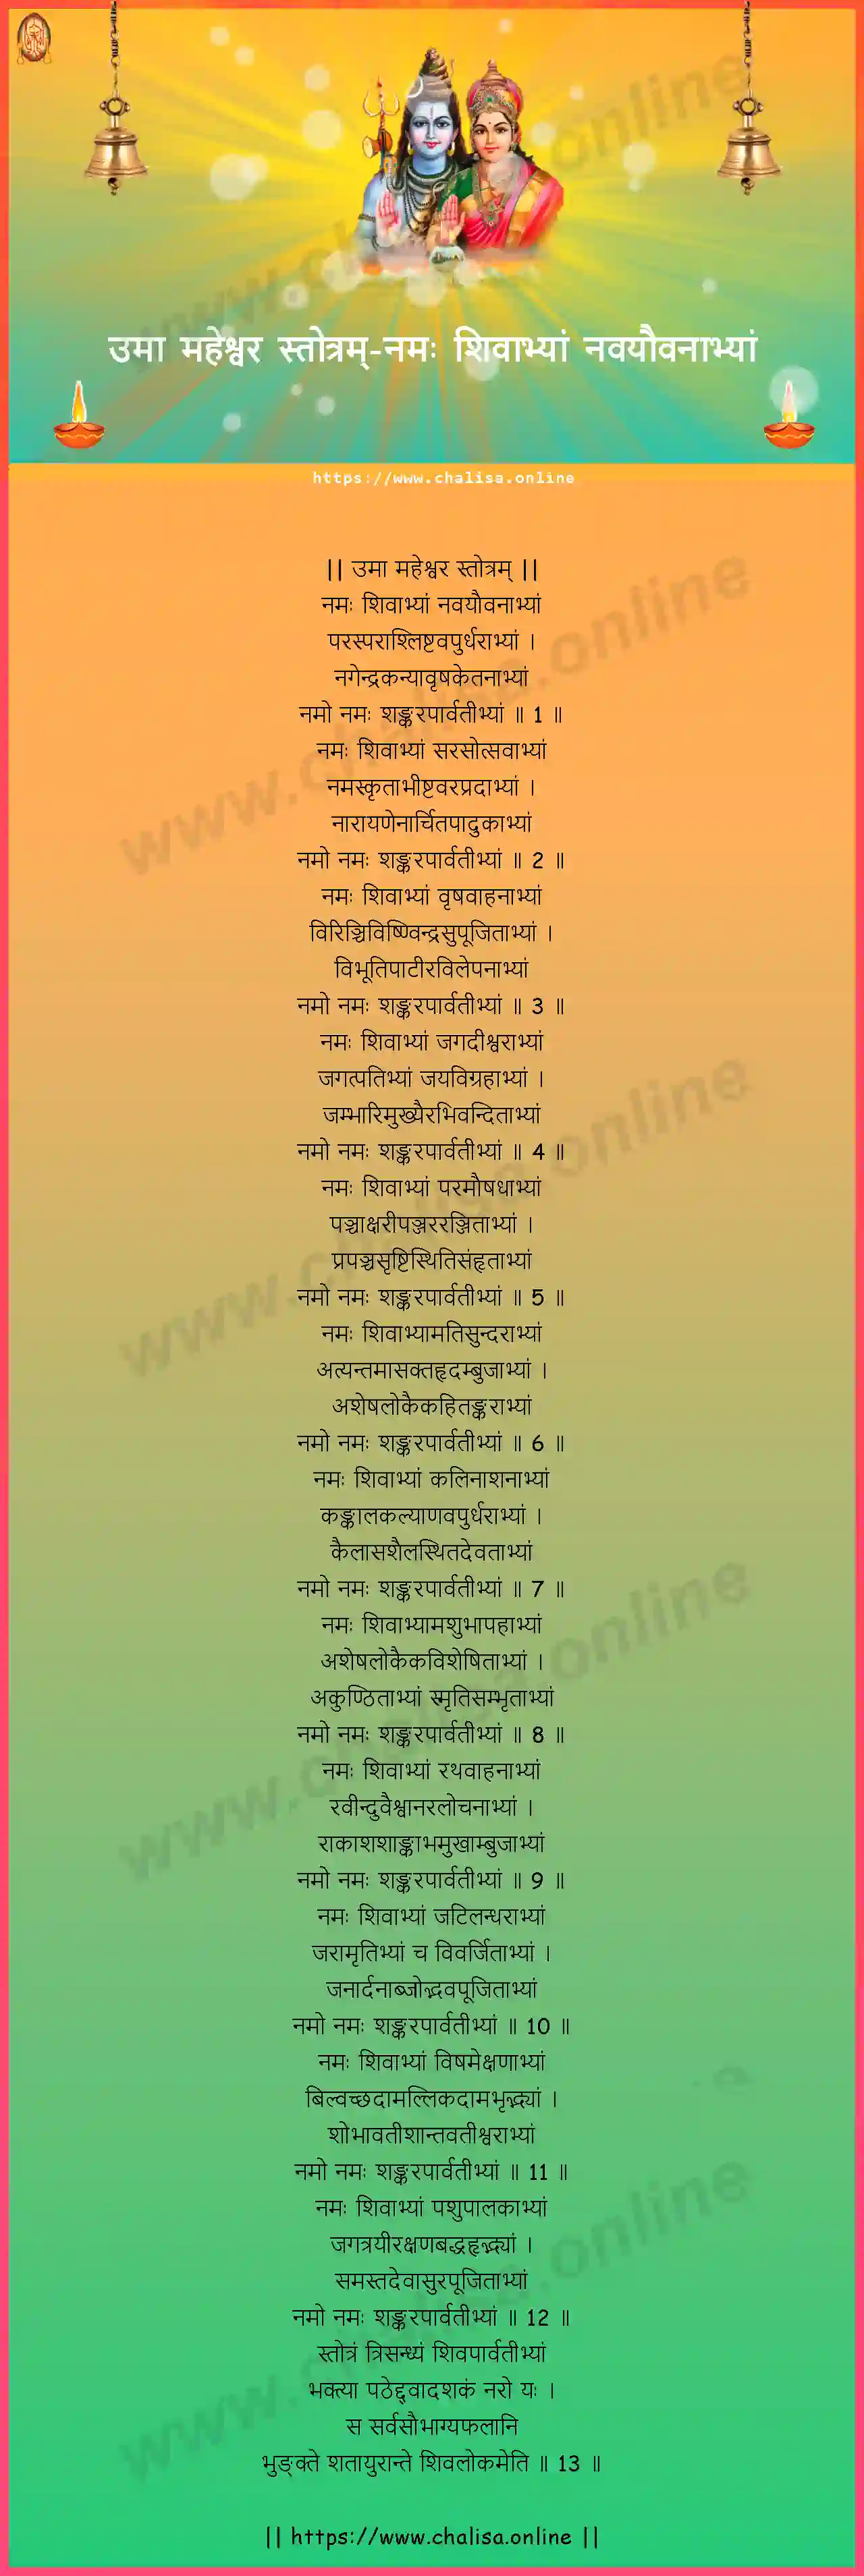 namah-sivabhyam-uma-maheswara-stotram-devanagari-devanagari-lyrics-download